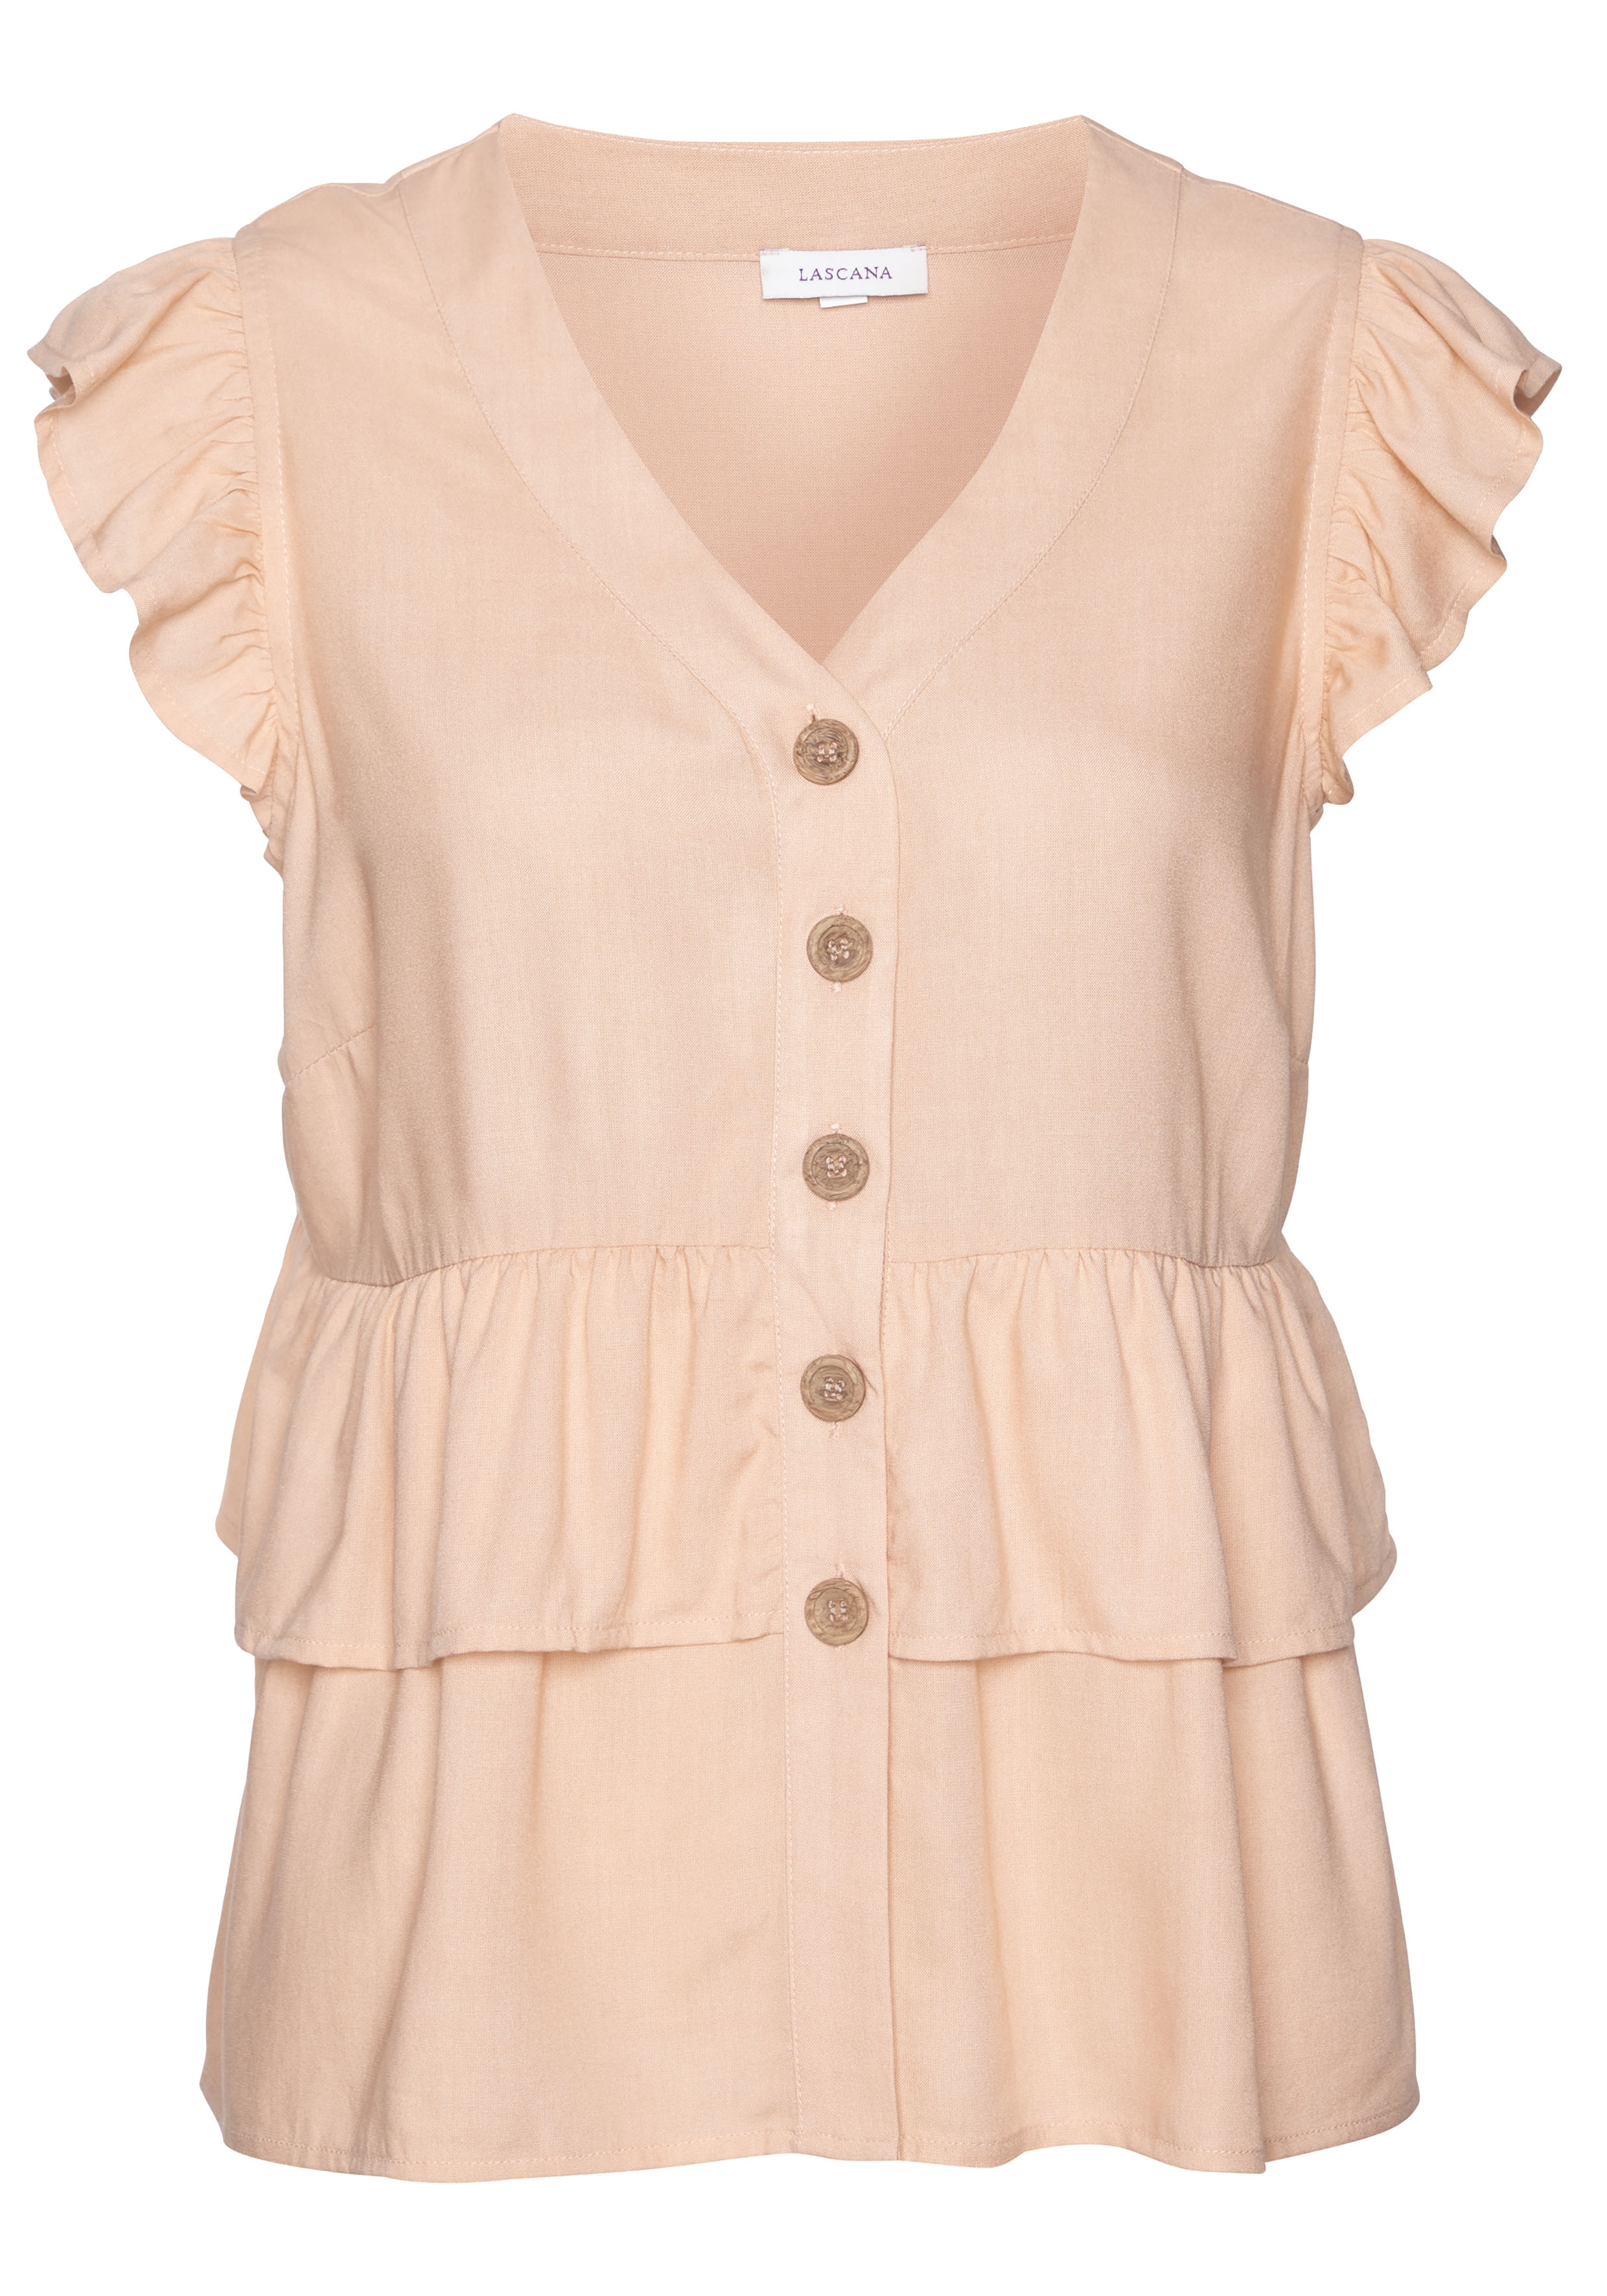 LASCANA Rüschenbluse mit kurzen Ärmeln, sommerliche Bluse mit Knopfleiste u günstig online kaufen